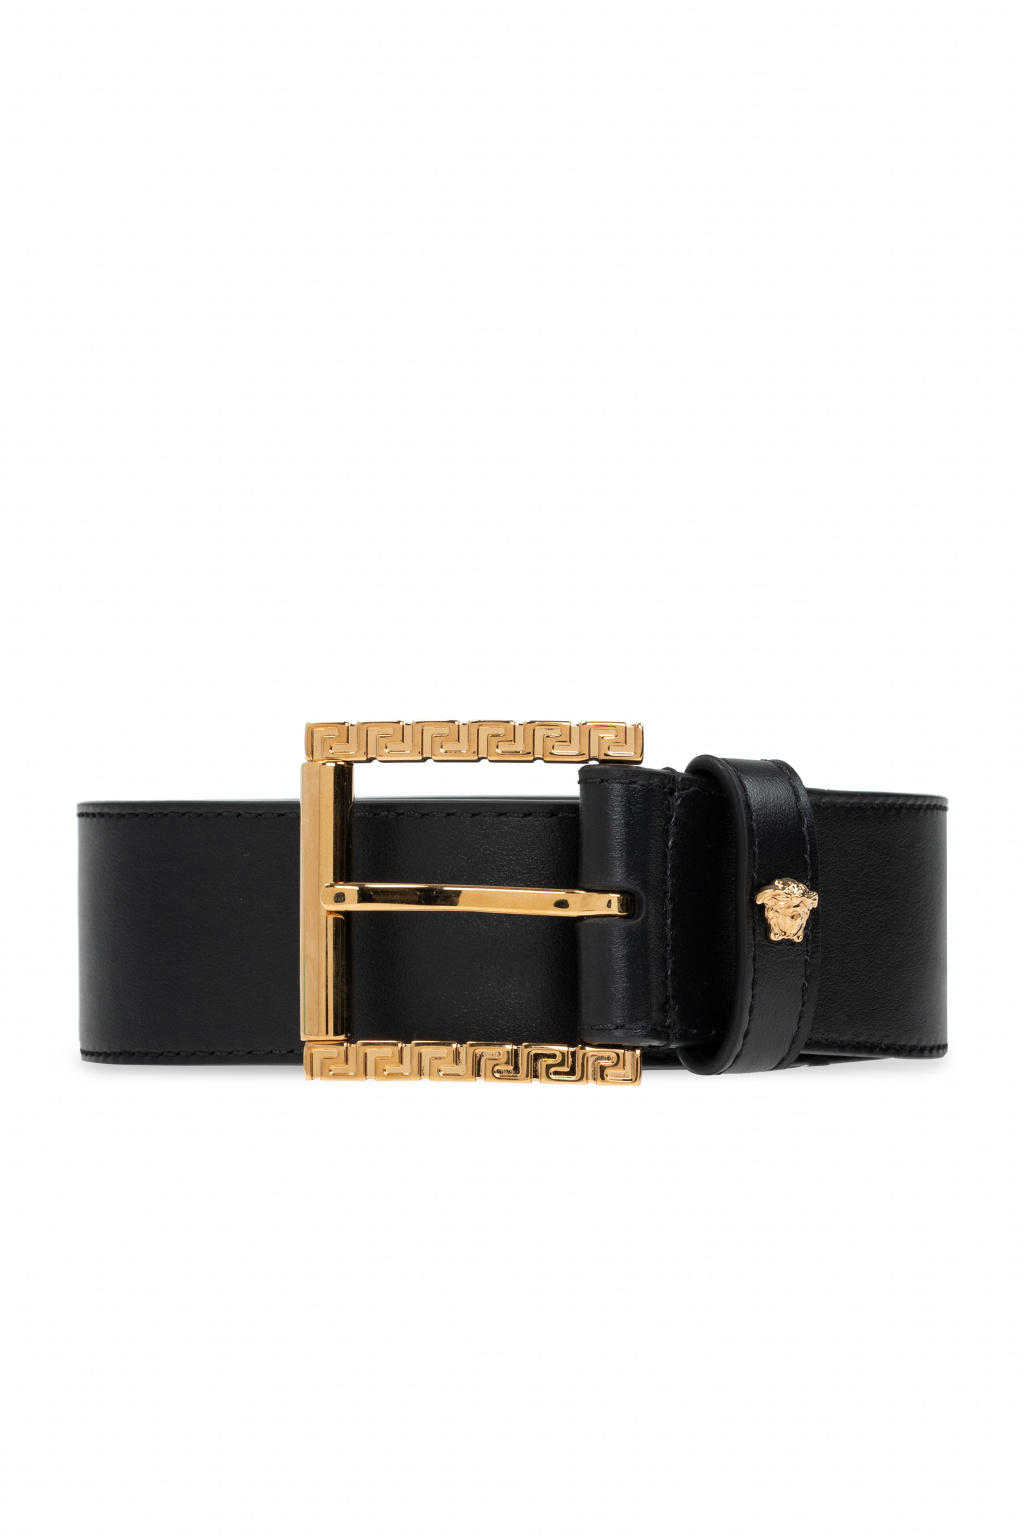 Versace Leather belt, Men's Accessories